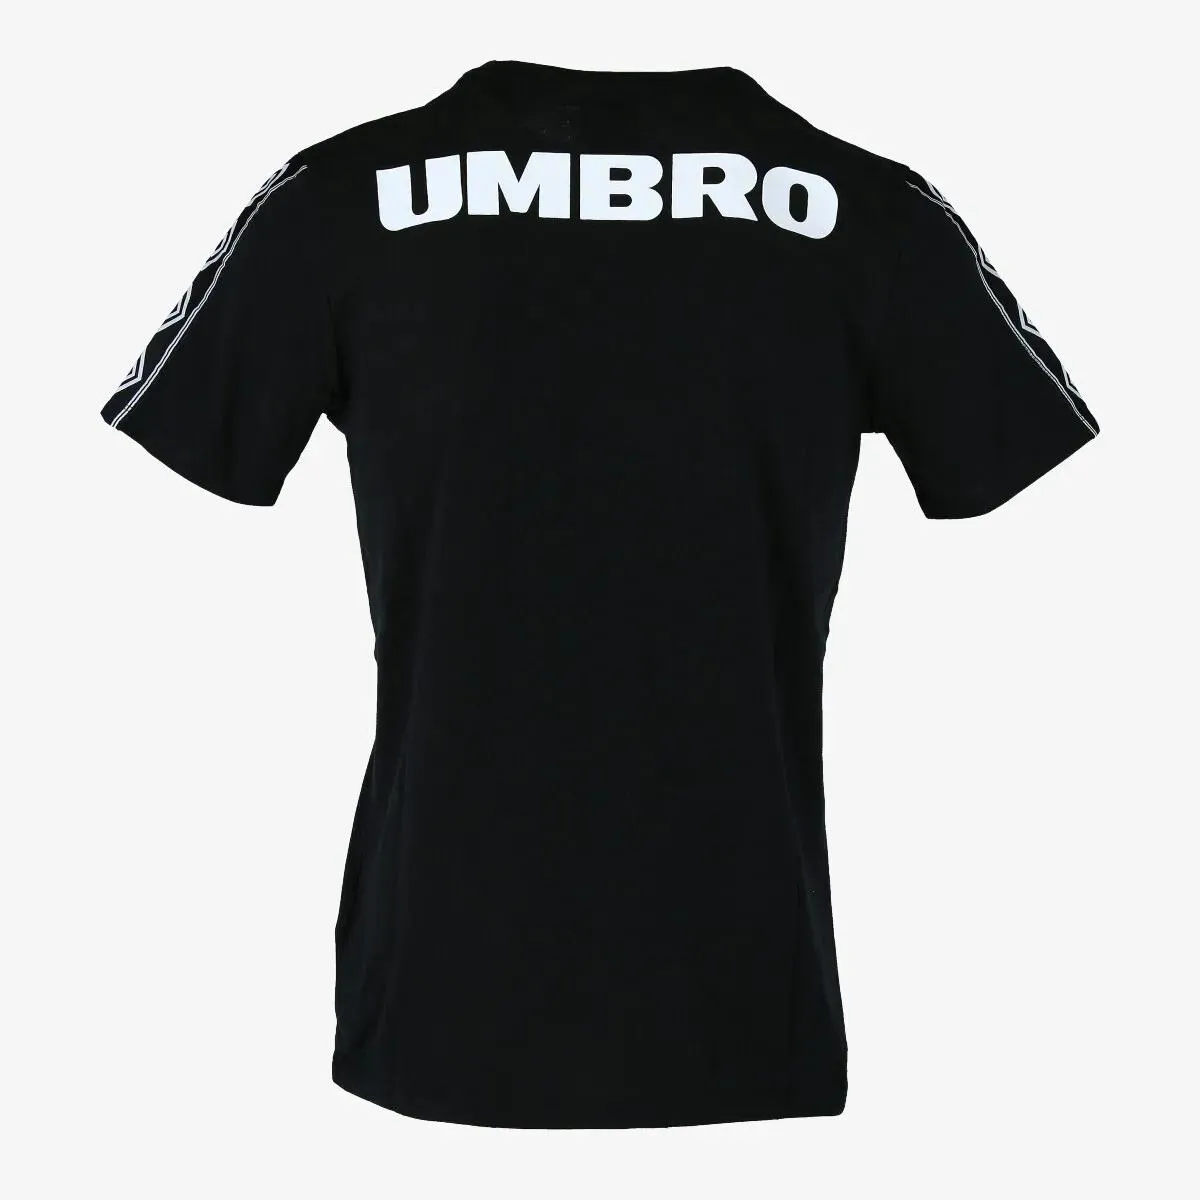 Umbro T-shirt RETRO 2 BIG LOGO 